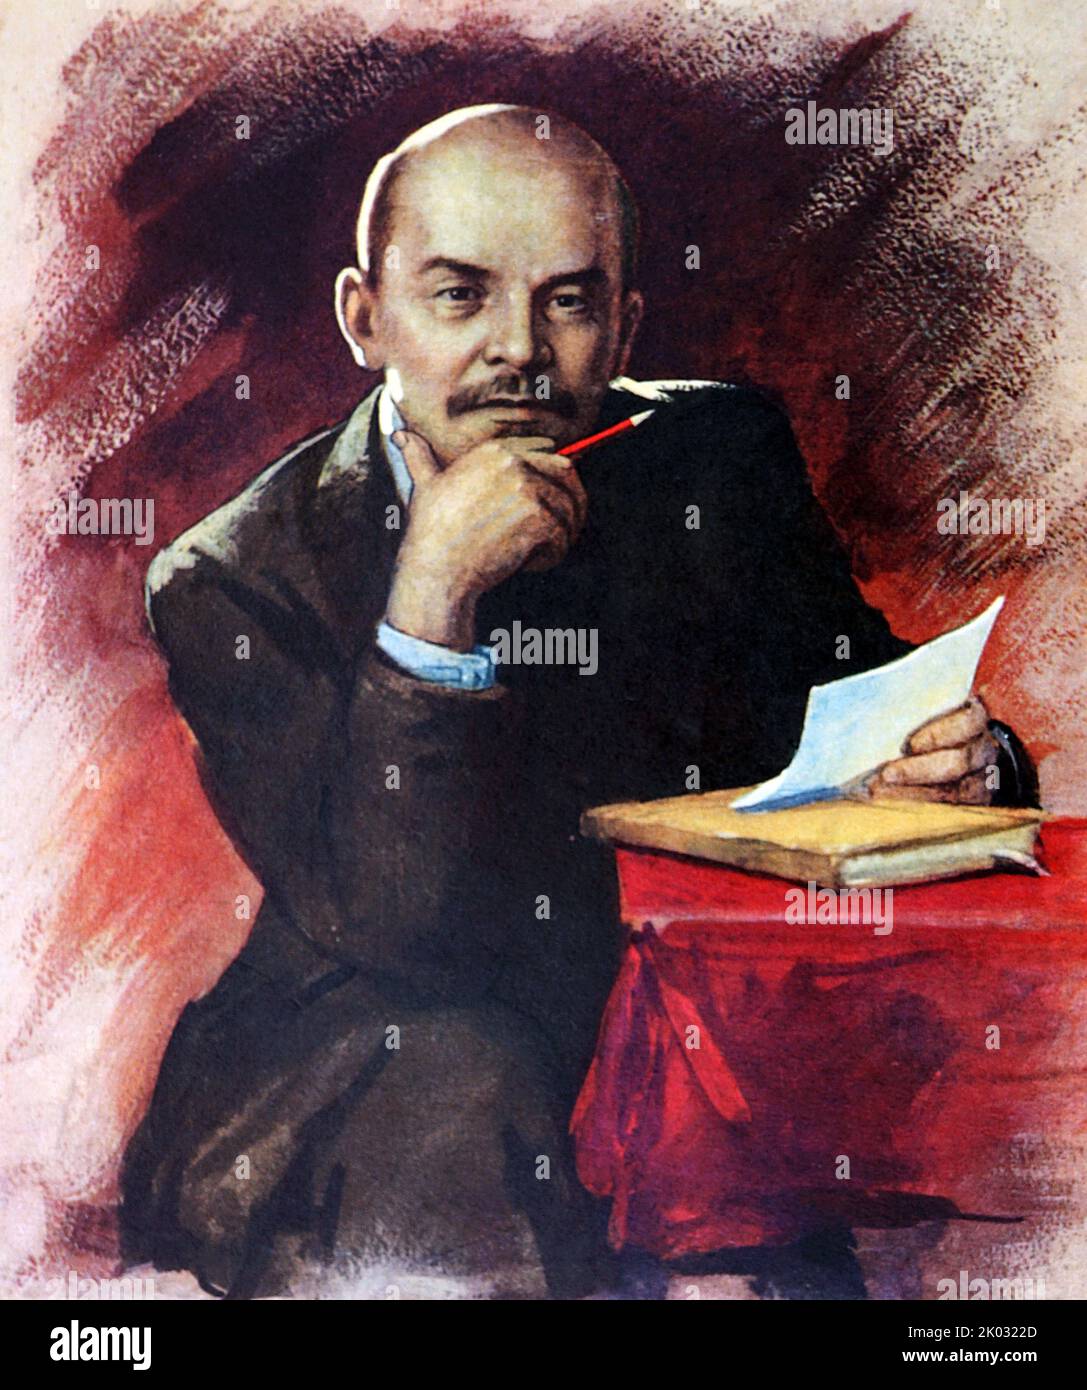 Vladimir Ilyich Lenin (1870 - 1924), rivoluzionario russo, politico e teorico politico. Fu il primo e fondatore capo di governo della Russia sovietica dal 1917 al 1924 e dell'Unione sovietica dal 1922 al 1924. Foto Stock